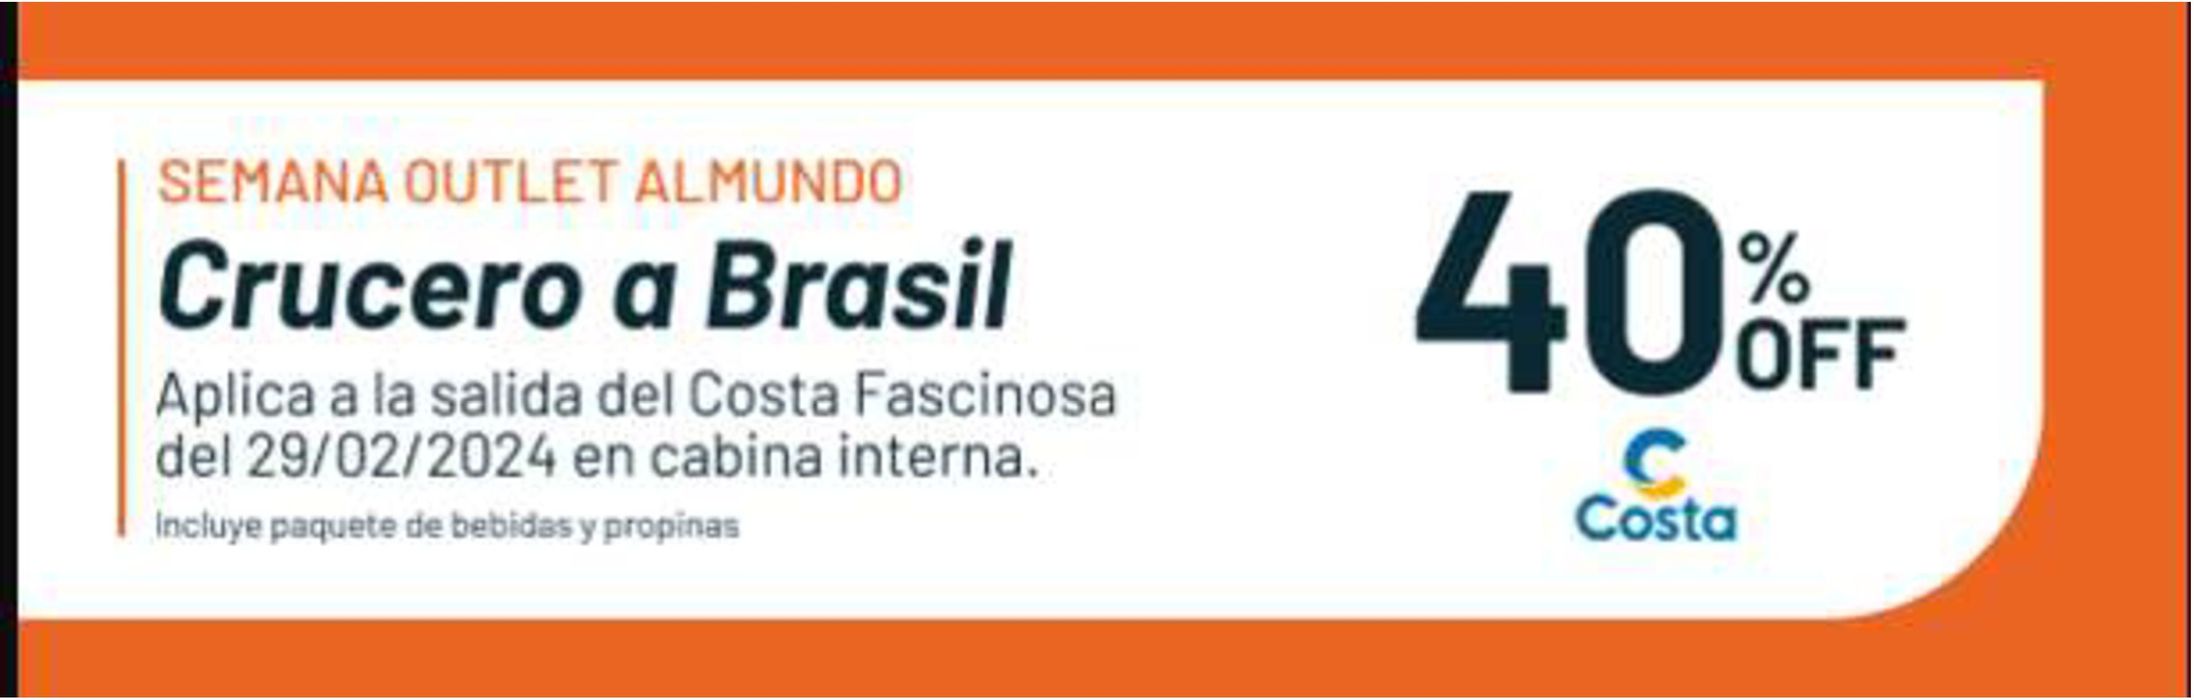 Catálogo Almundo en Rosario | Crucero a Brasil 40% off | 18/1/2024 - 18/6/2024